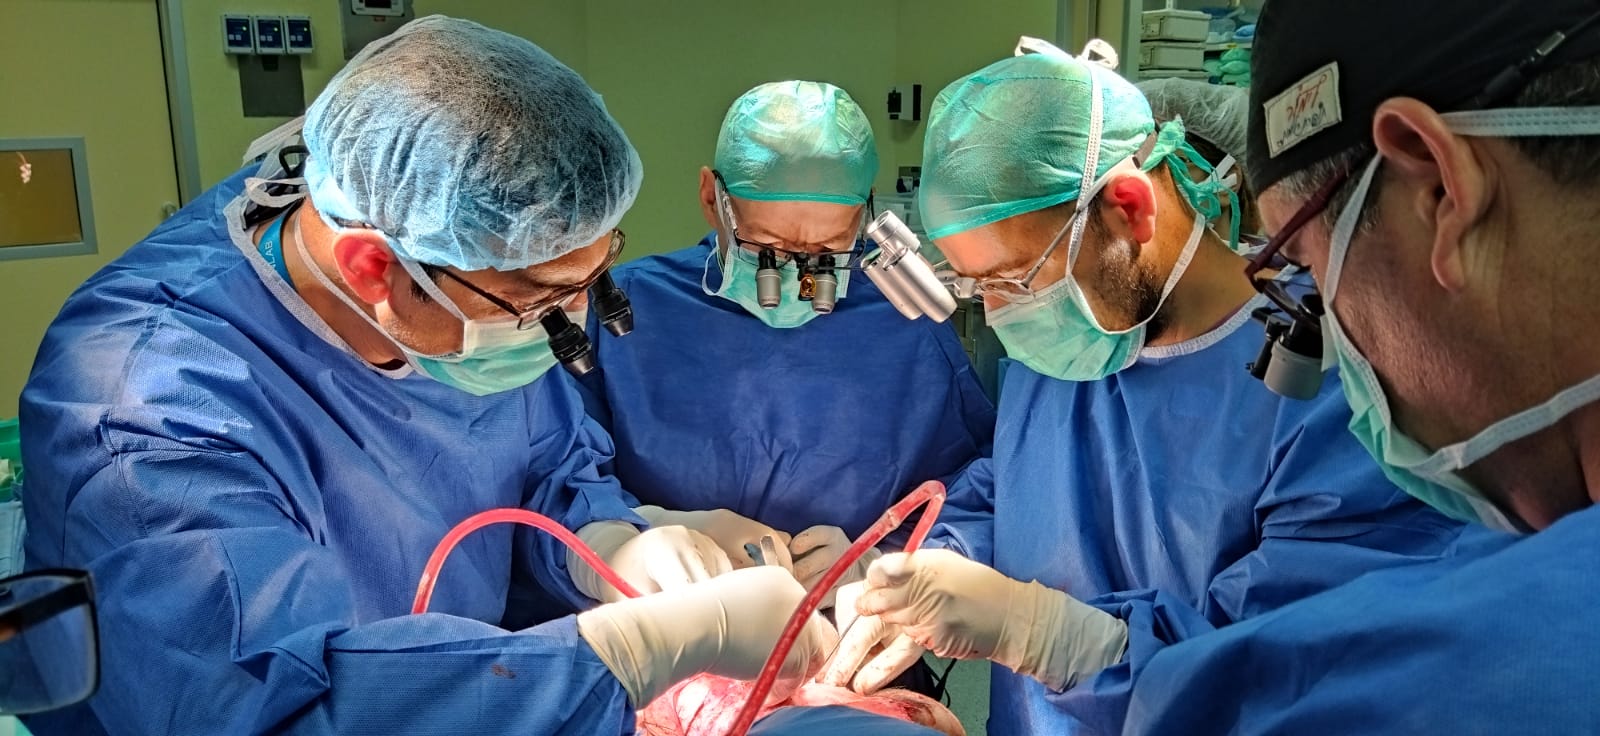 במהלך הניתוח (צילום: דוברות סורוקה)